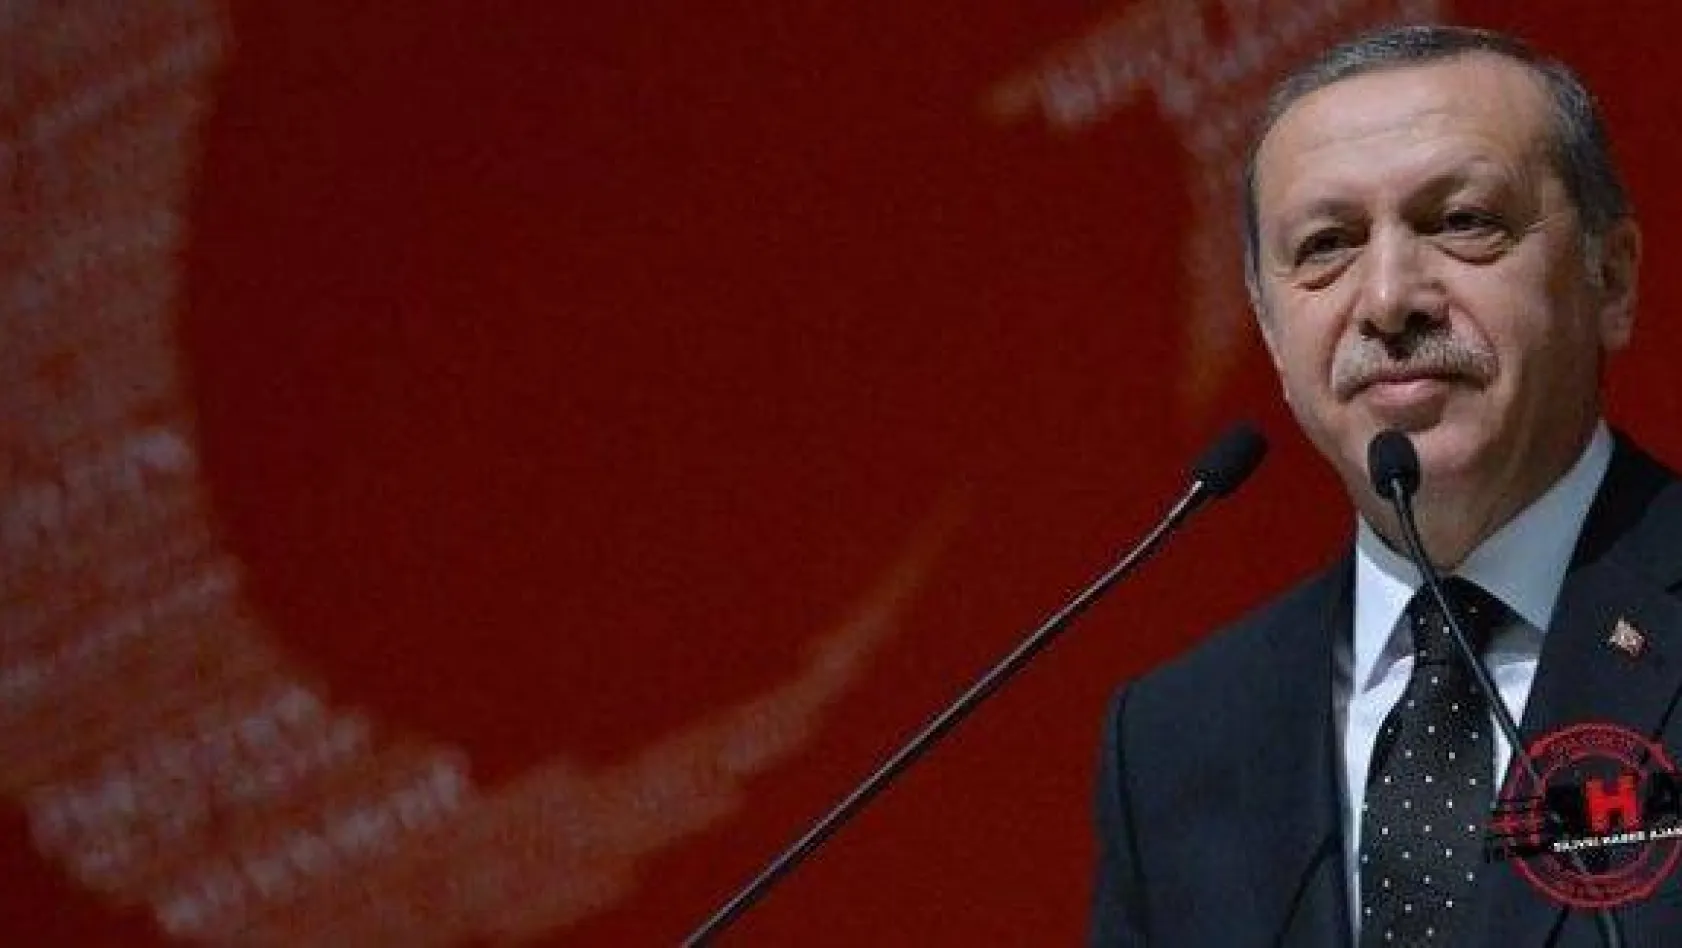 Cumhurbaşkanı Erdoğan'dan ikinci Dağlıca açıklaması